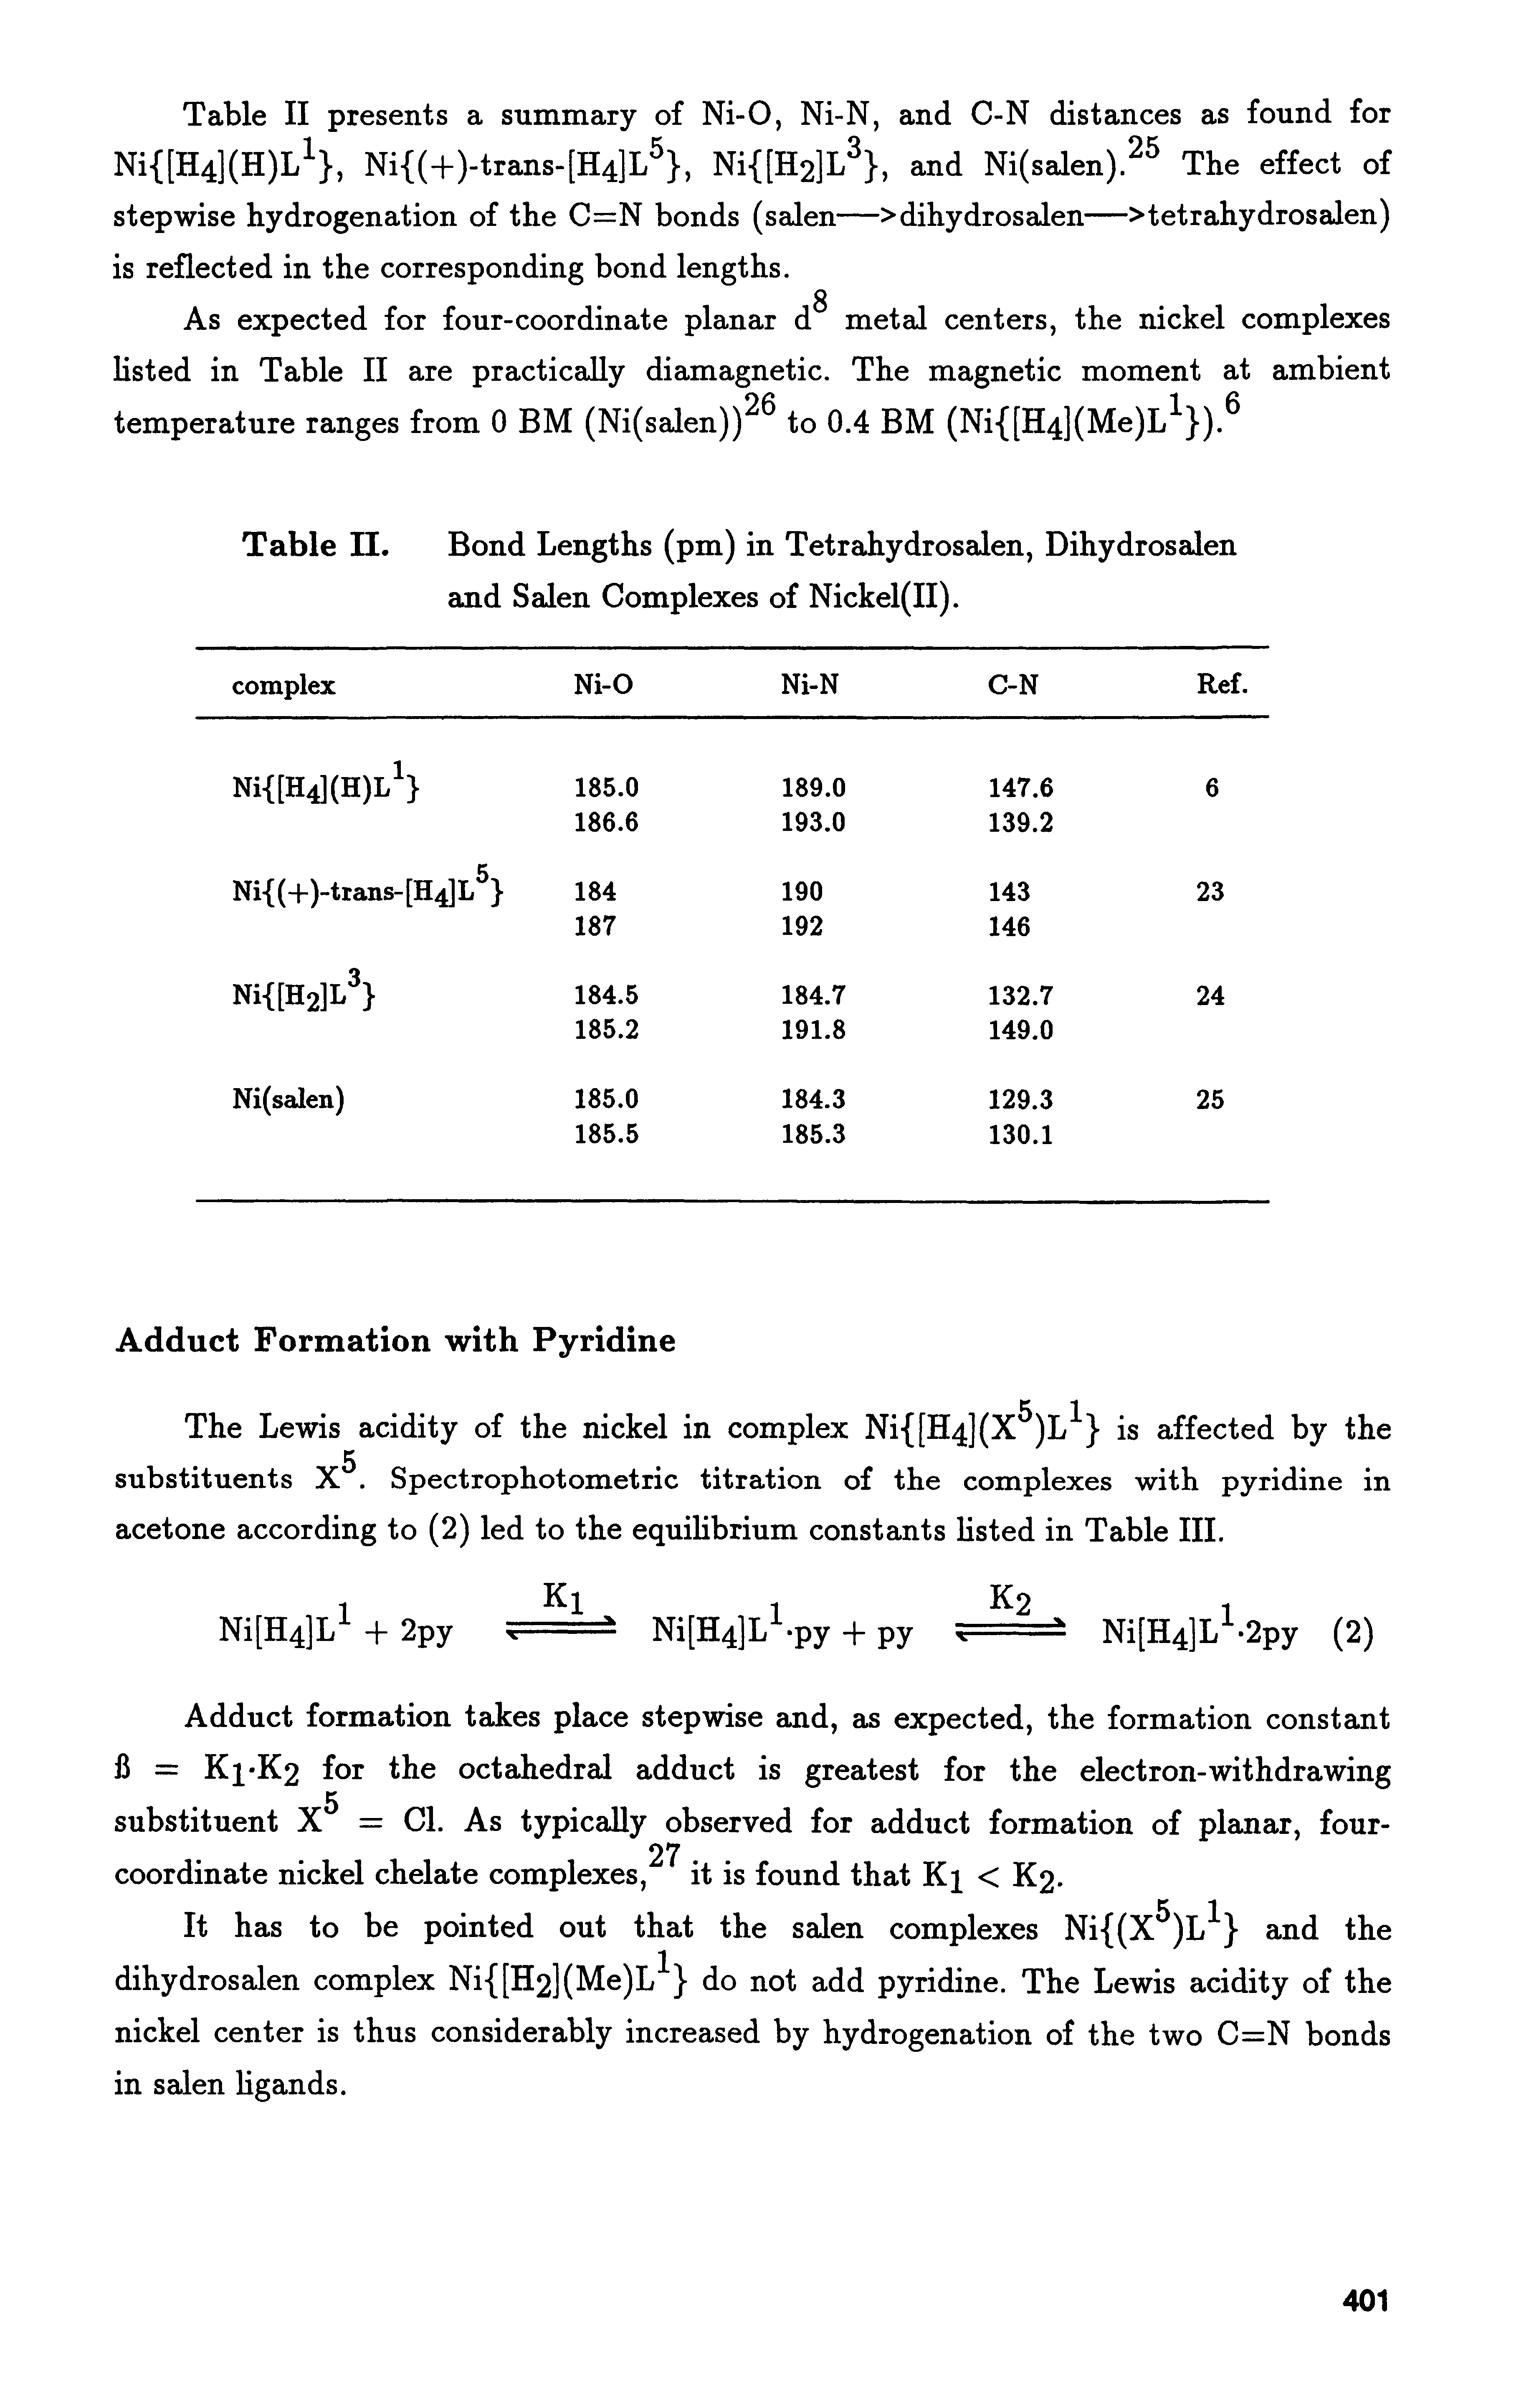 Table II. Bond Lengths (pm) in Tetrahydrosalen, Dihydrosalen and Salen Complexes of Nickel(II).